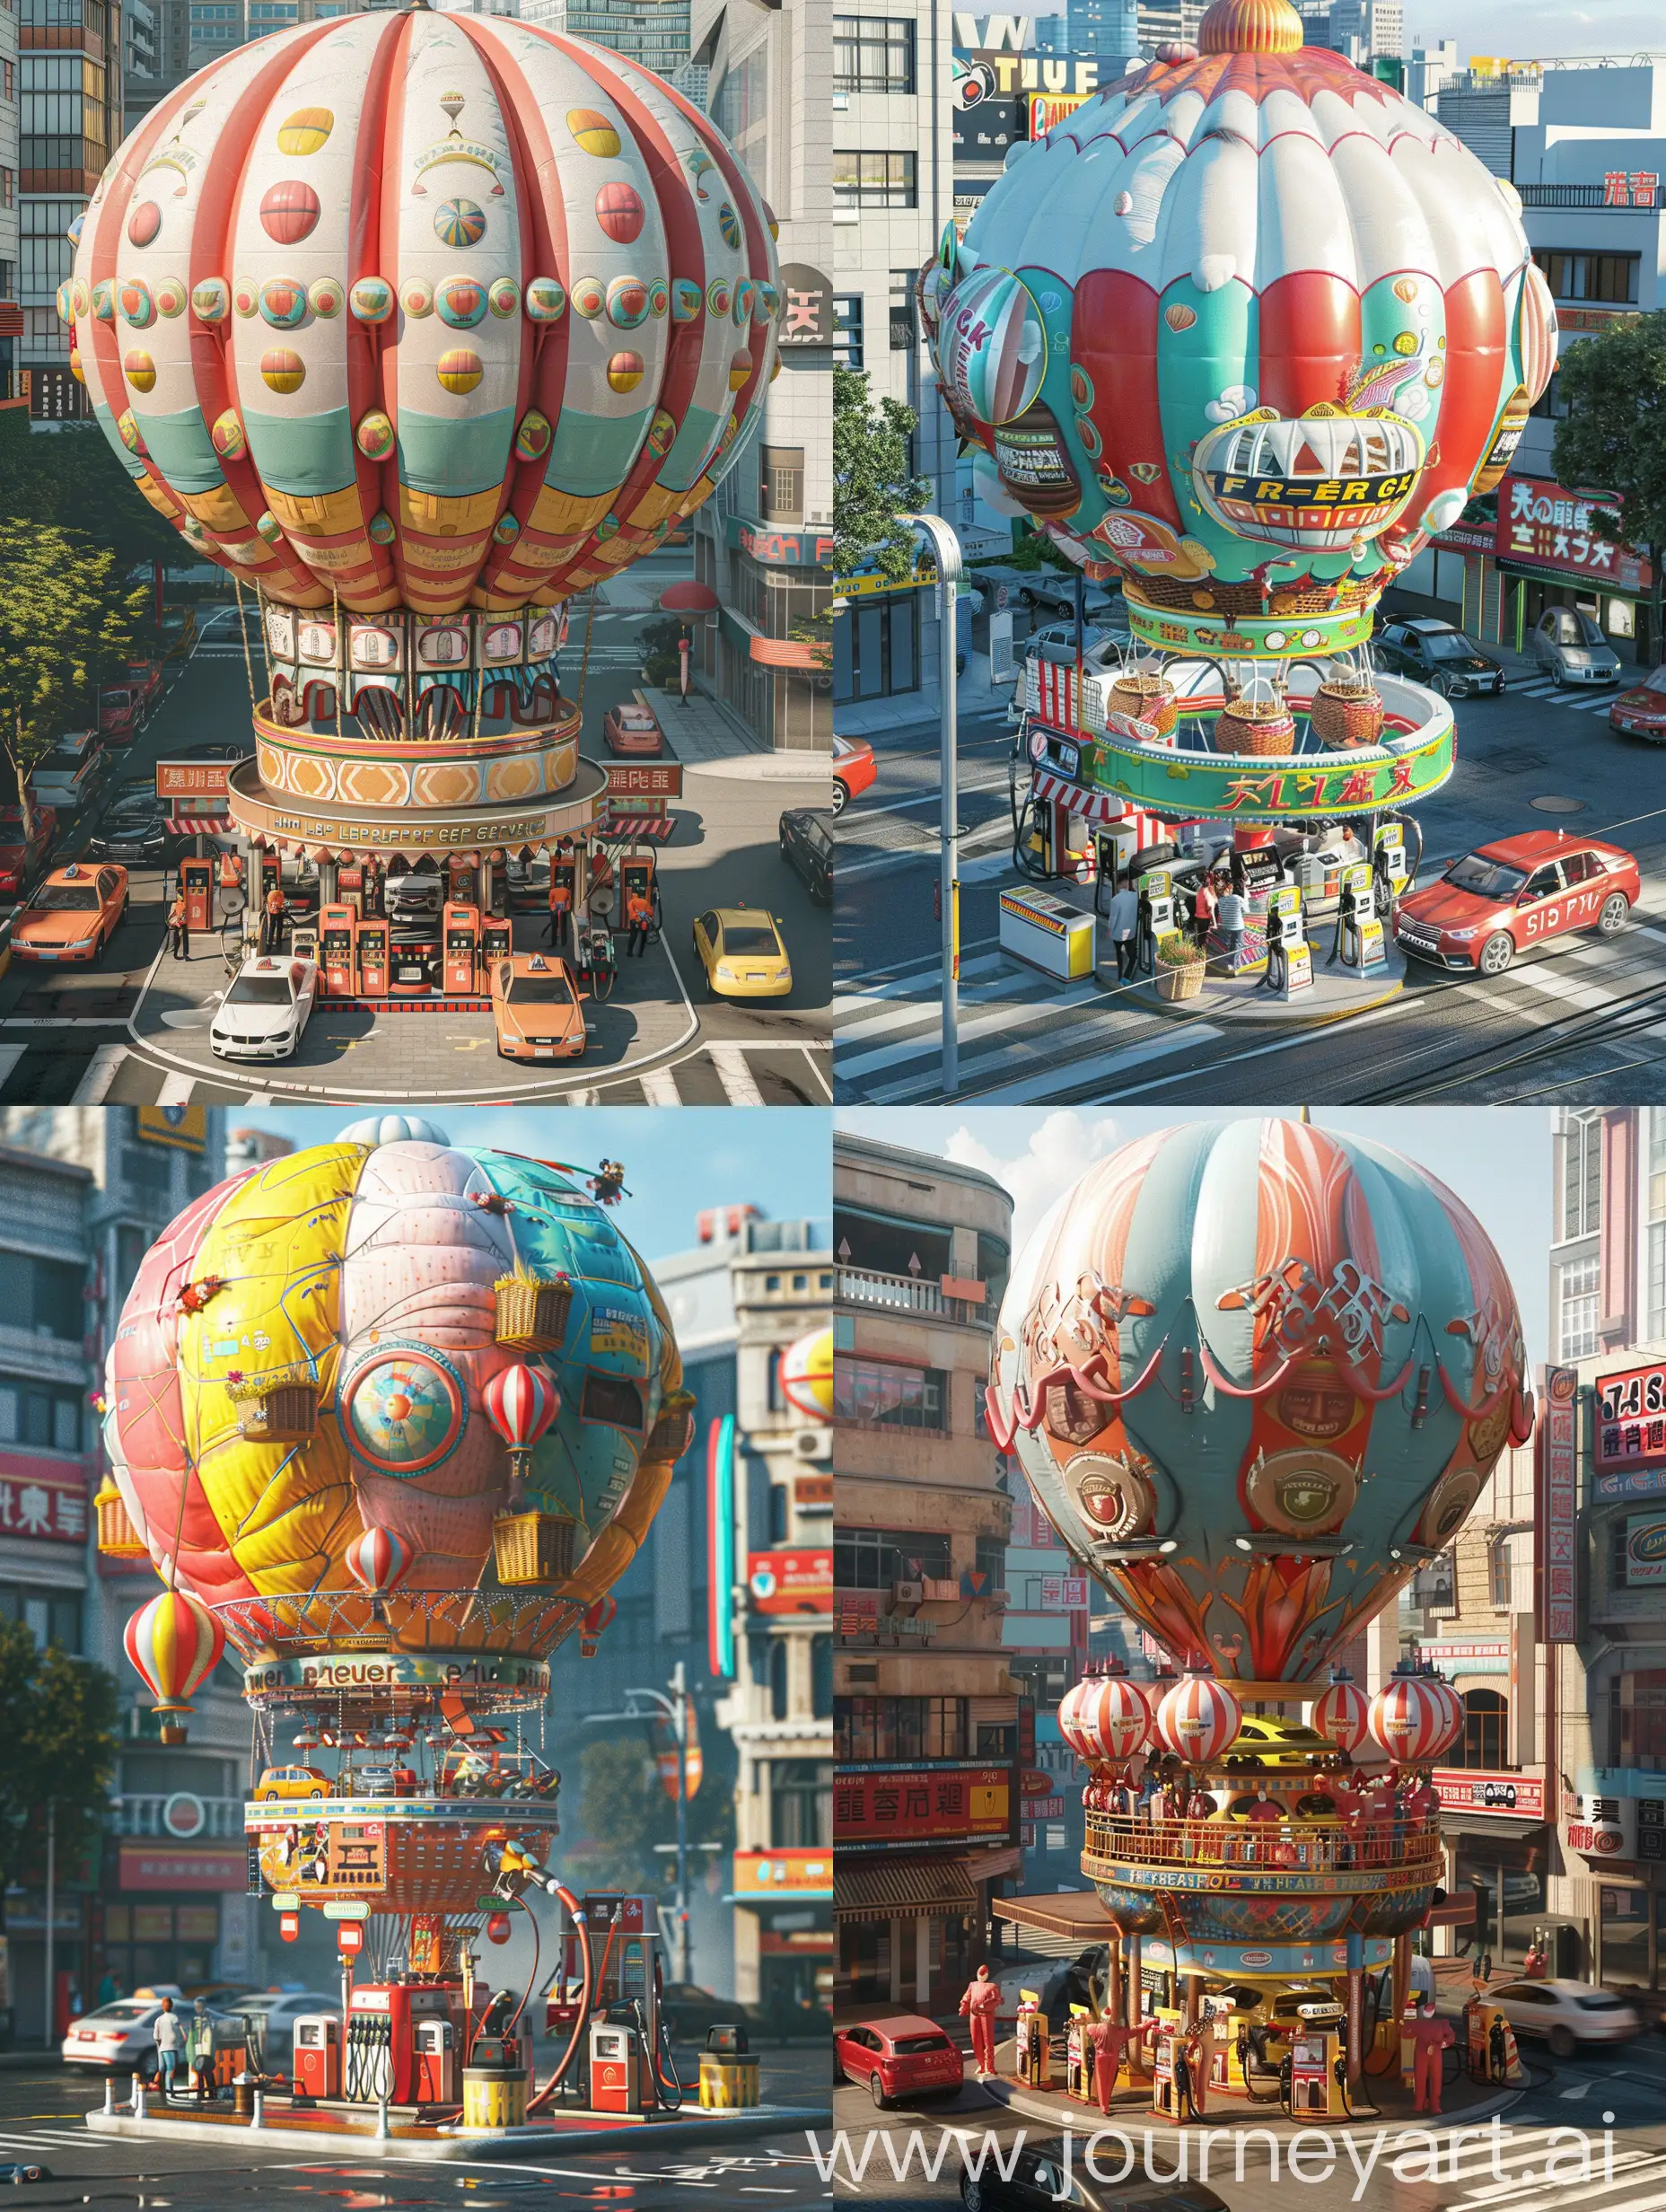 一个巨型热气球造型的加油站，矗立在城市街道上。热气球的外形设计为一个充气式的加油站，颜色鲜艳，充满童话般的感觉。热气球的篮子部分是加油站的服务区，装饰着各种汽车相关的图案和元素，如油枪、汽油桶等。热气球顶部有一个巨大的气球，仿佛随时准备飞向天空。
车主们可以驾车前来这个热气球加油站，体验独特的加油服务。工作人员穿着特制的热气球服装，热情地为车主们提供加油服务。周围的街道上停满了各种款式的汽车，繁忙而有趣的氛围。
